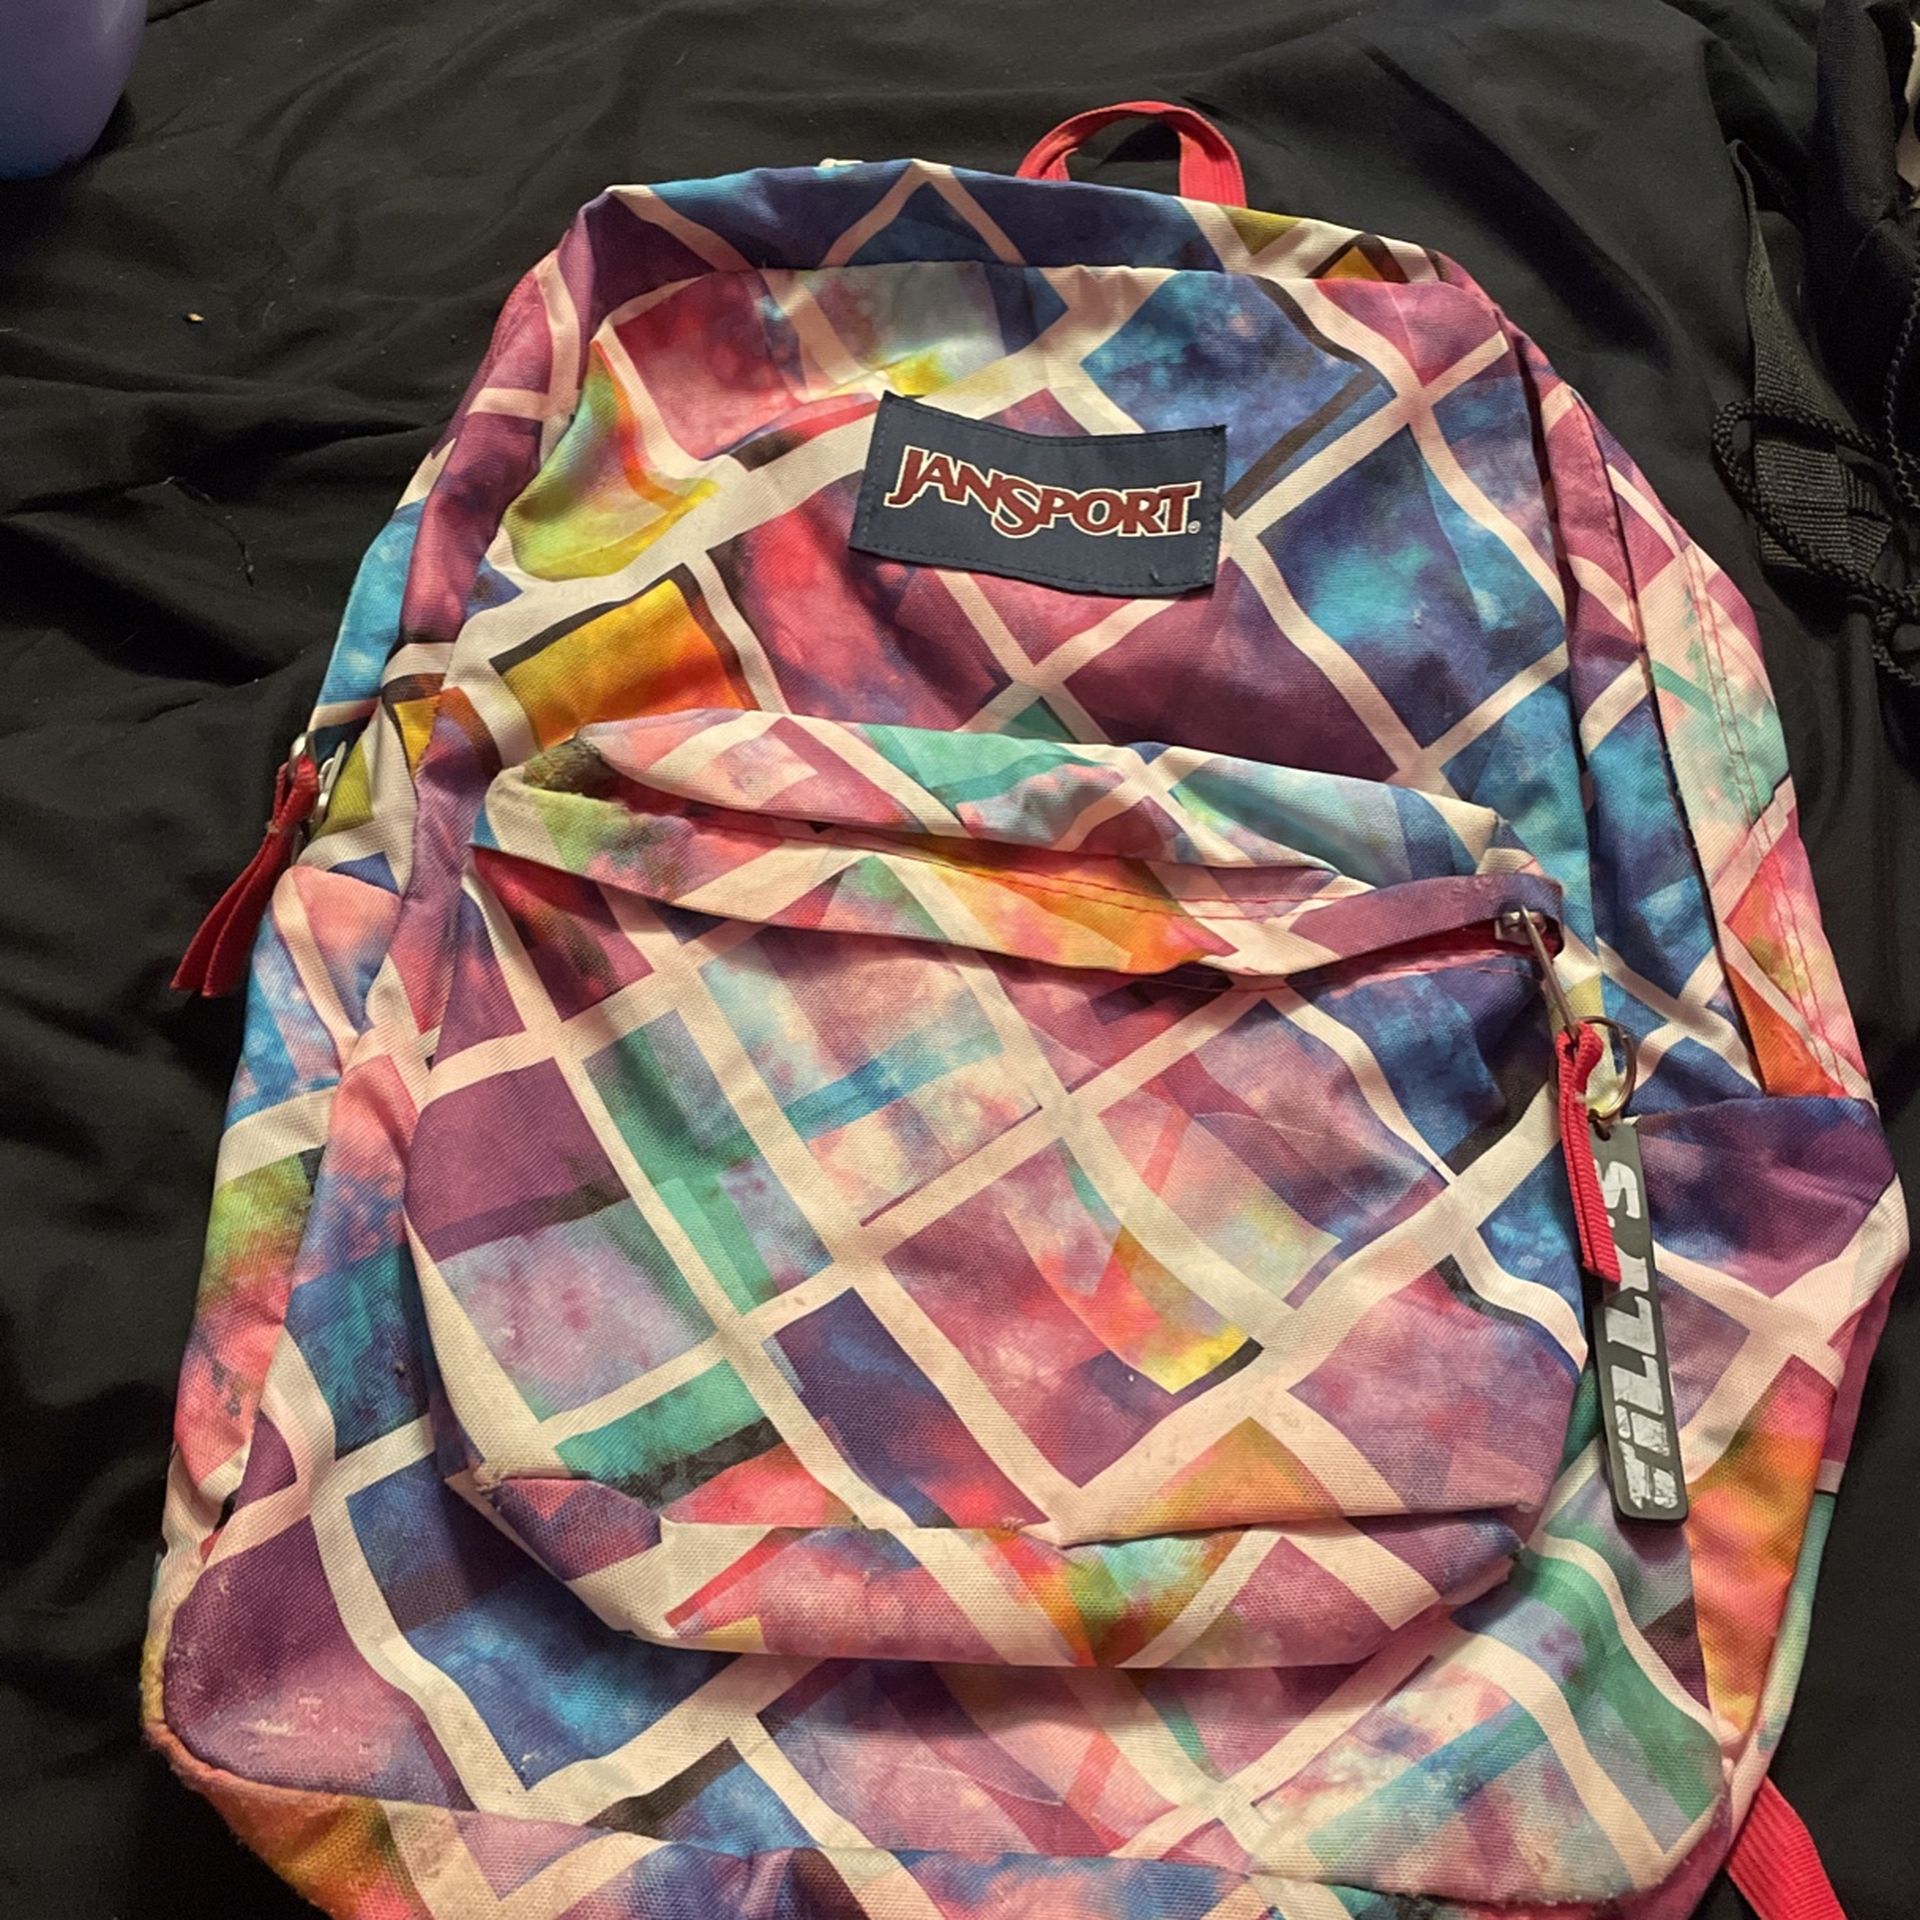 Jansport Superbreak Multi-colored Backpack